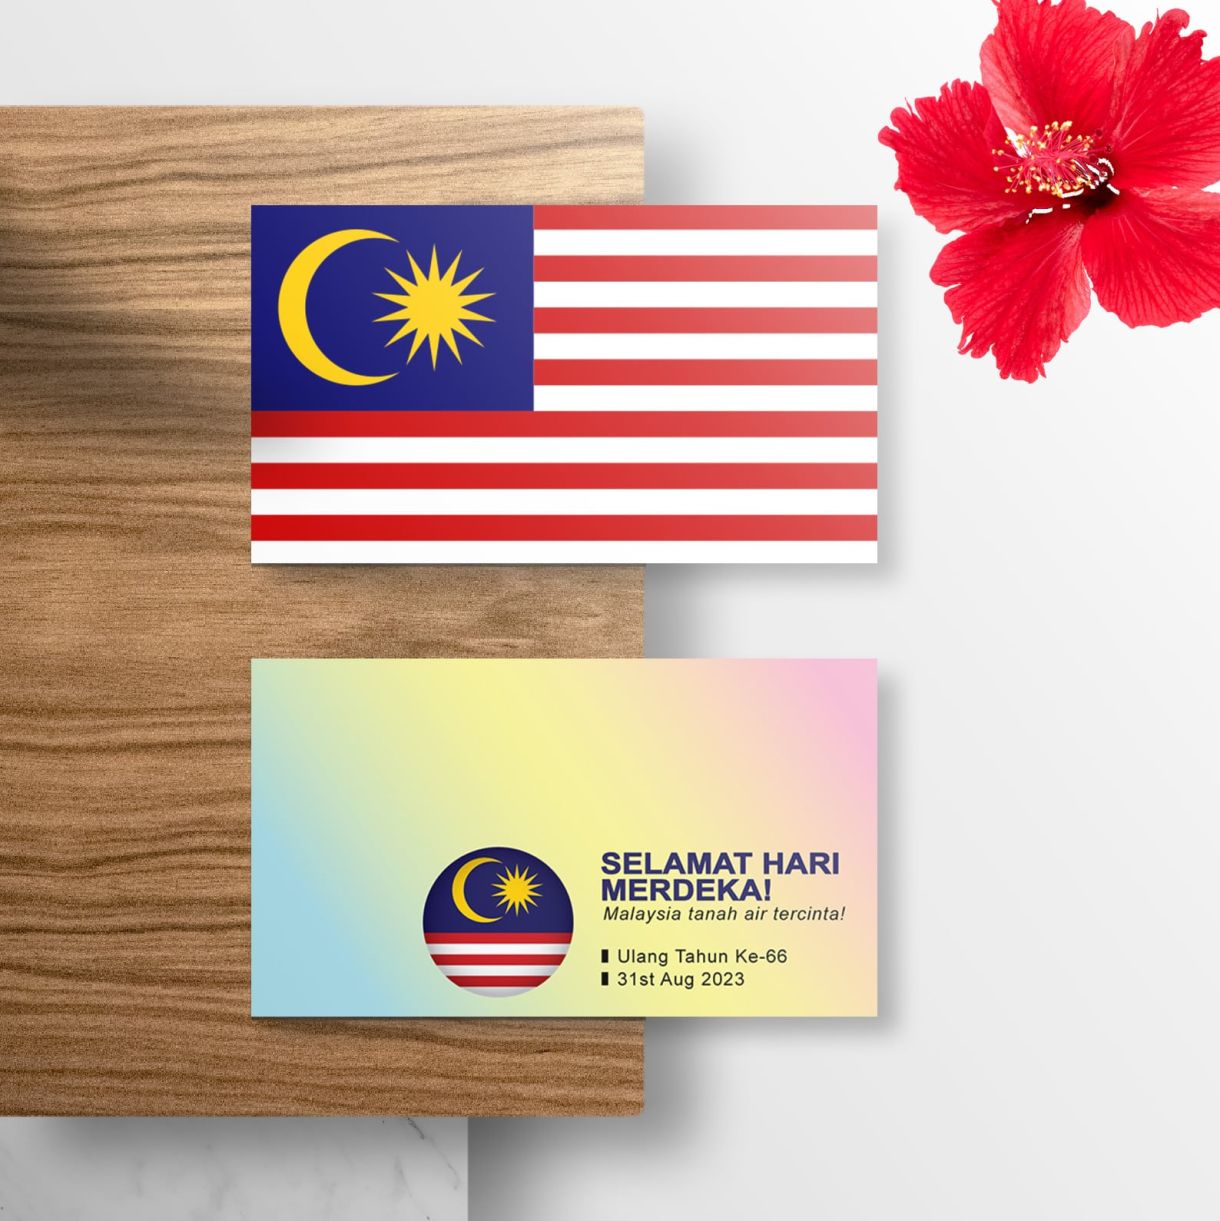 Selamat Hari Merdeka, Malaysia tanah air tercinta!